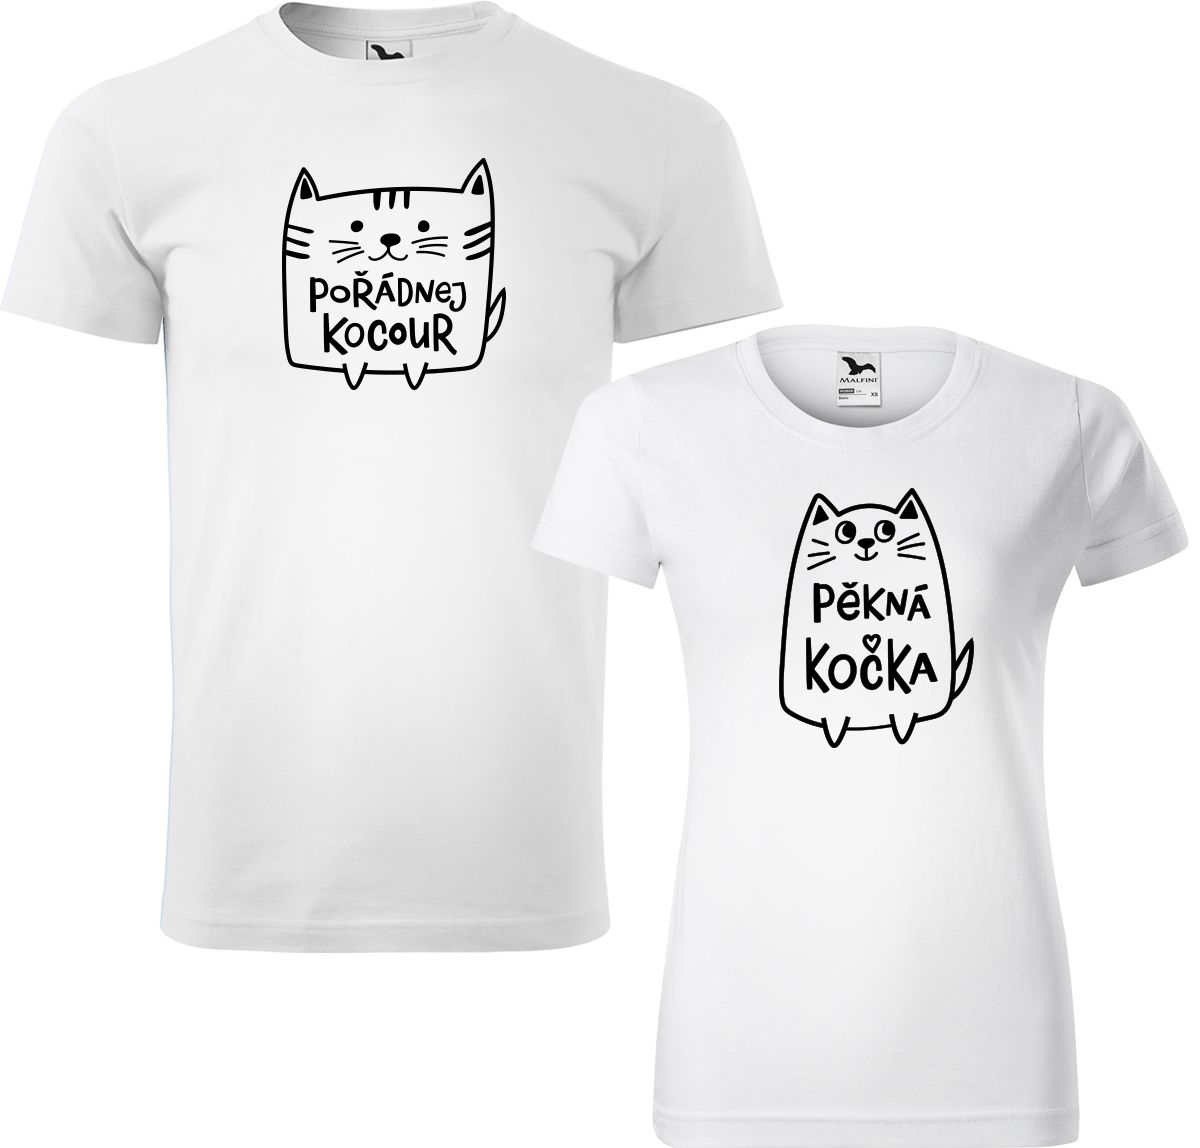 Trička pro páry - Pořádnej kocour a pěkná kočka Barva: Bílá (00), Velikost dámské tričko: L, Velikost pánské tričko: XL